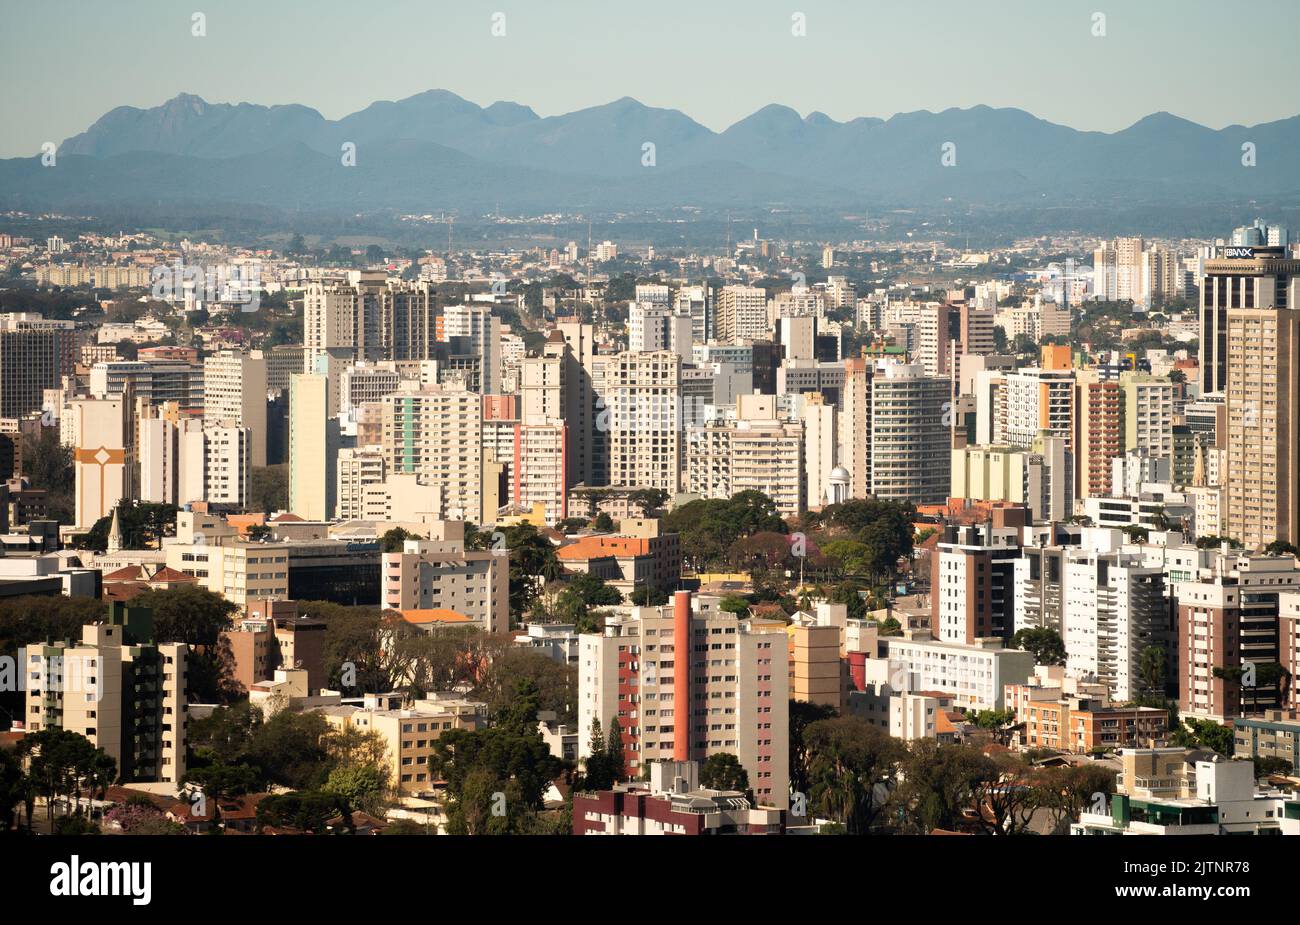 Vue panoramique sur la ville de Curitiba, capitale de l'état de Paraná, sud du Brésil, avec les montagnes de la Serra do Mar en arrière-plan Banque D'Images